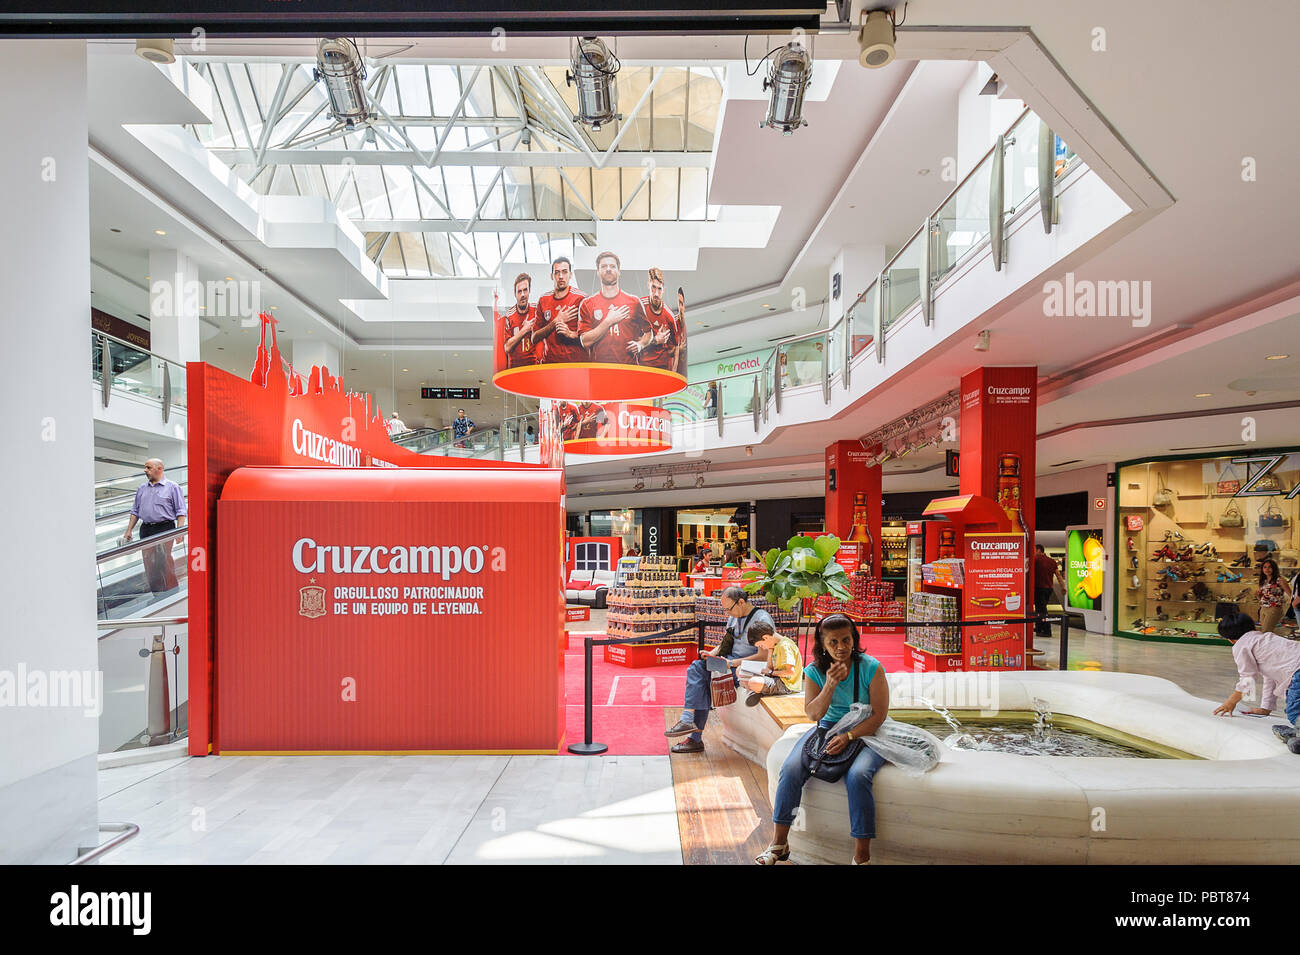 First mall in la fotografías e imágenes de alta resolución - Página 2 -  Alamy